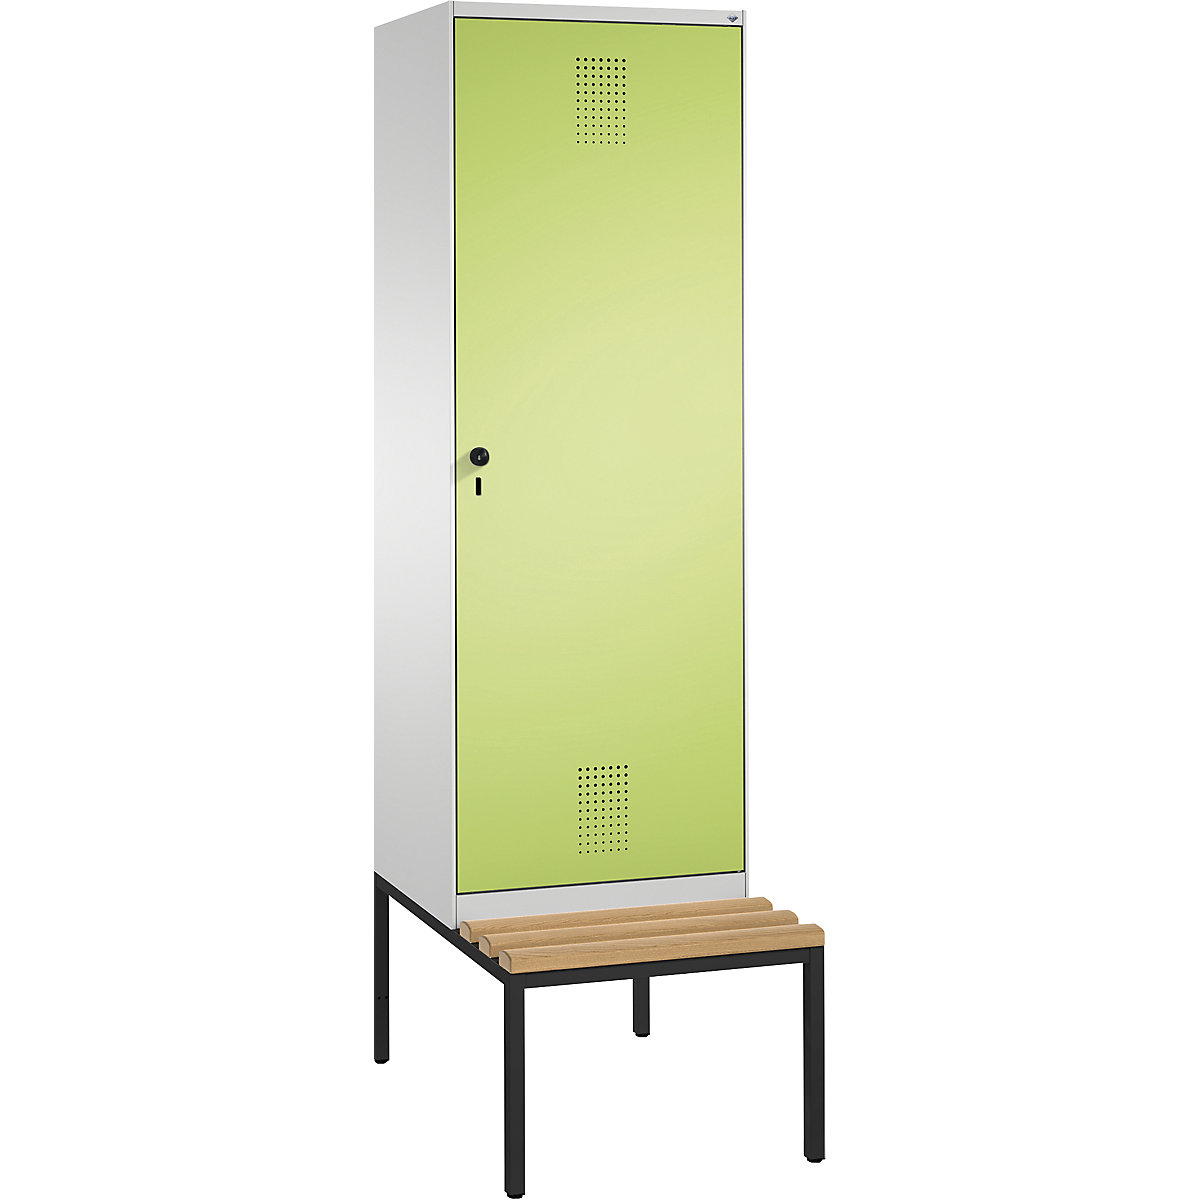 Šatní skříň s lavicí EVOLO s dveřmi přes 2 oddíly – C+P, 2 oddíly, 1 dveře, šířka oddílu 300 mm, světlá šedá / viridianová zelená-2